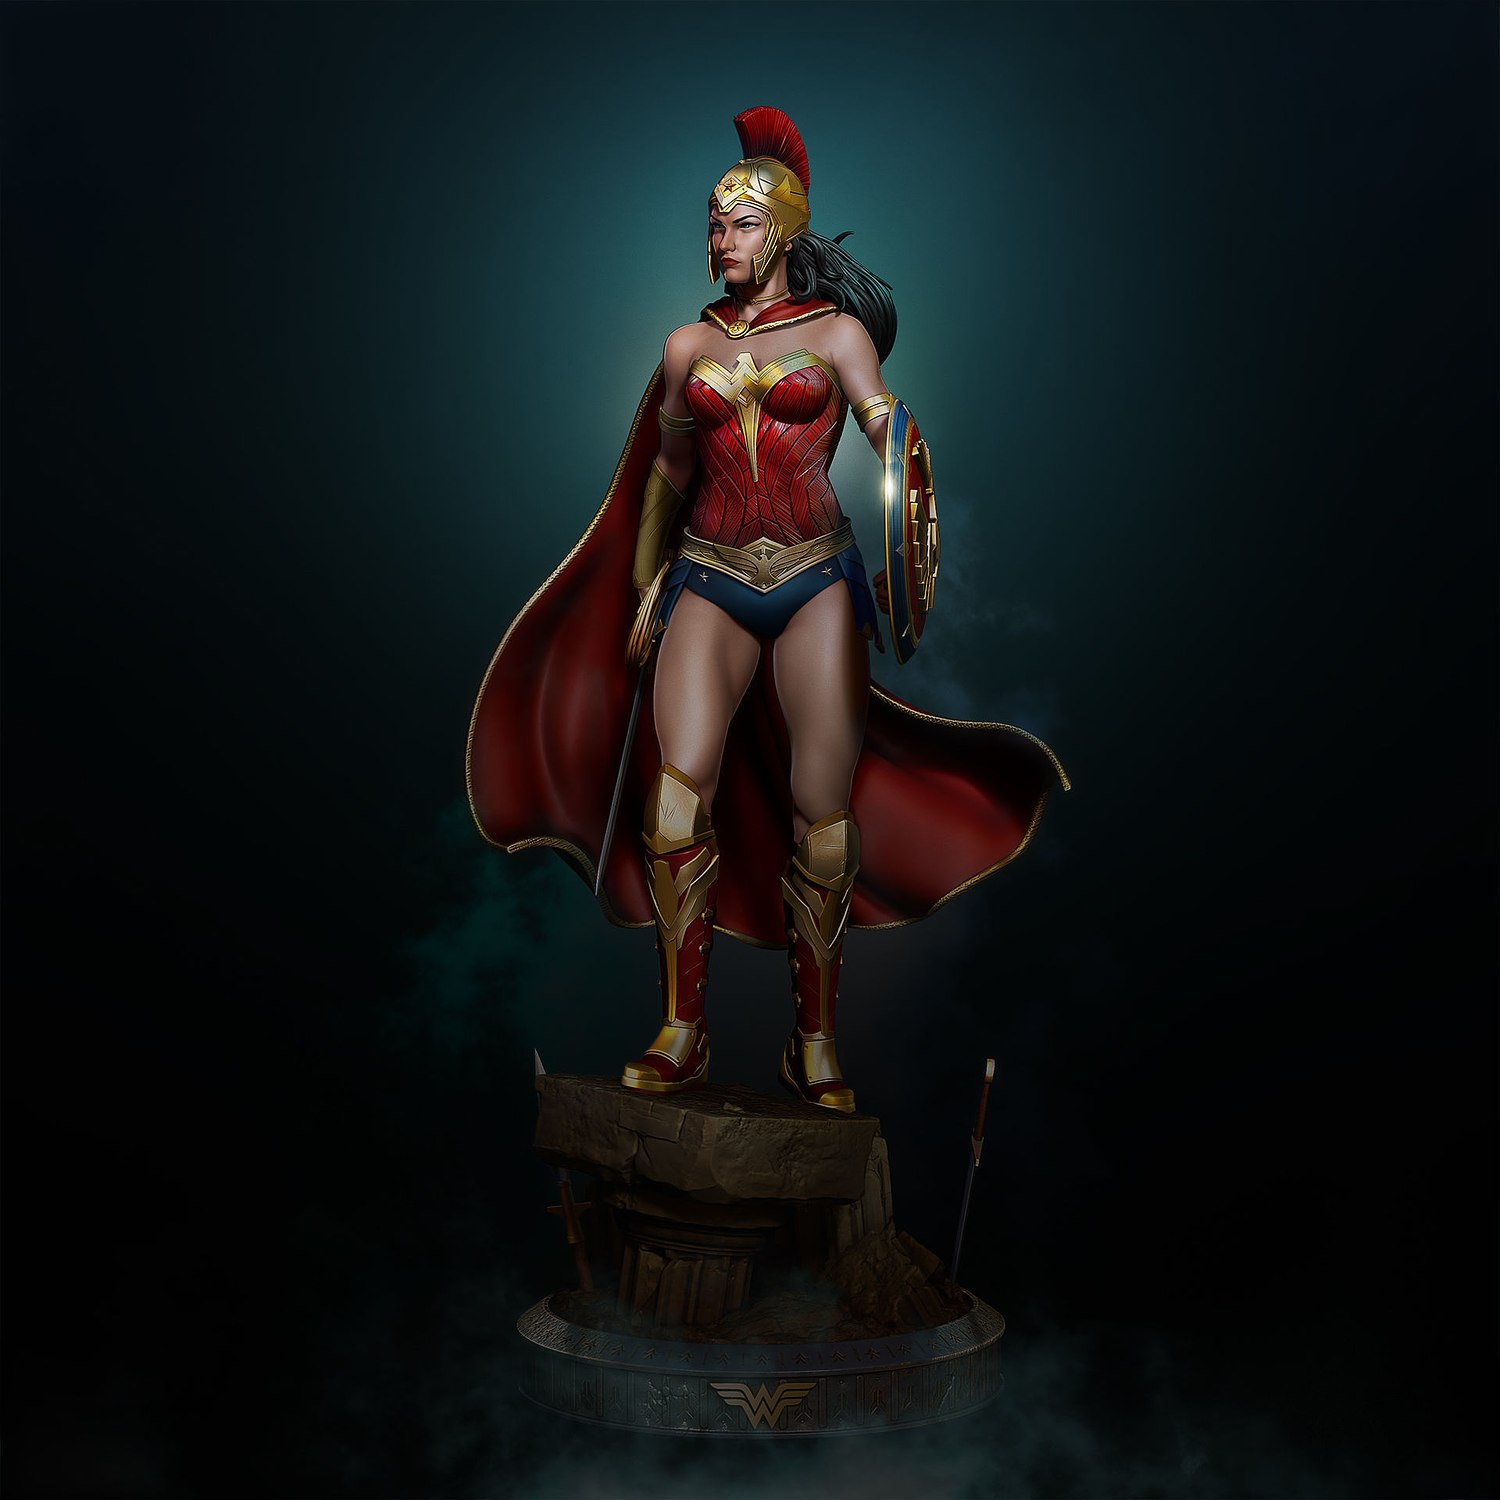 Warrior Wonder Woman From DC